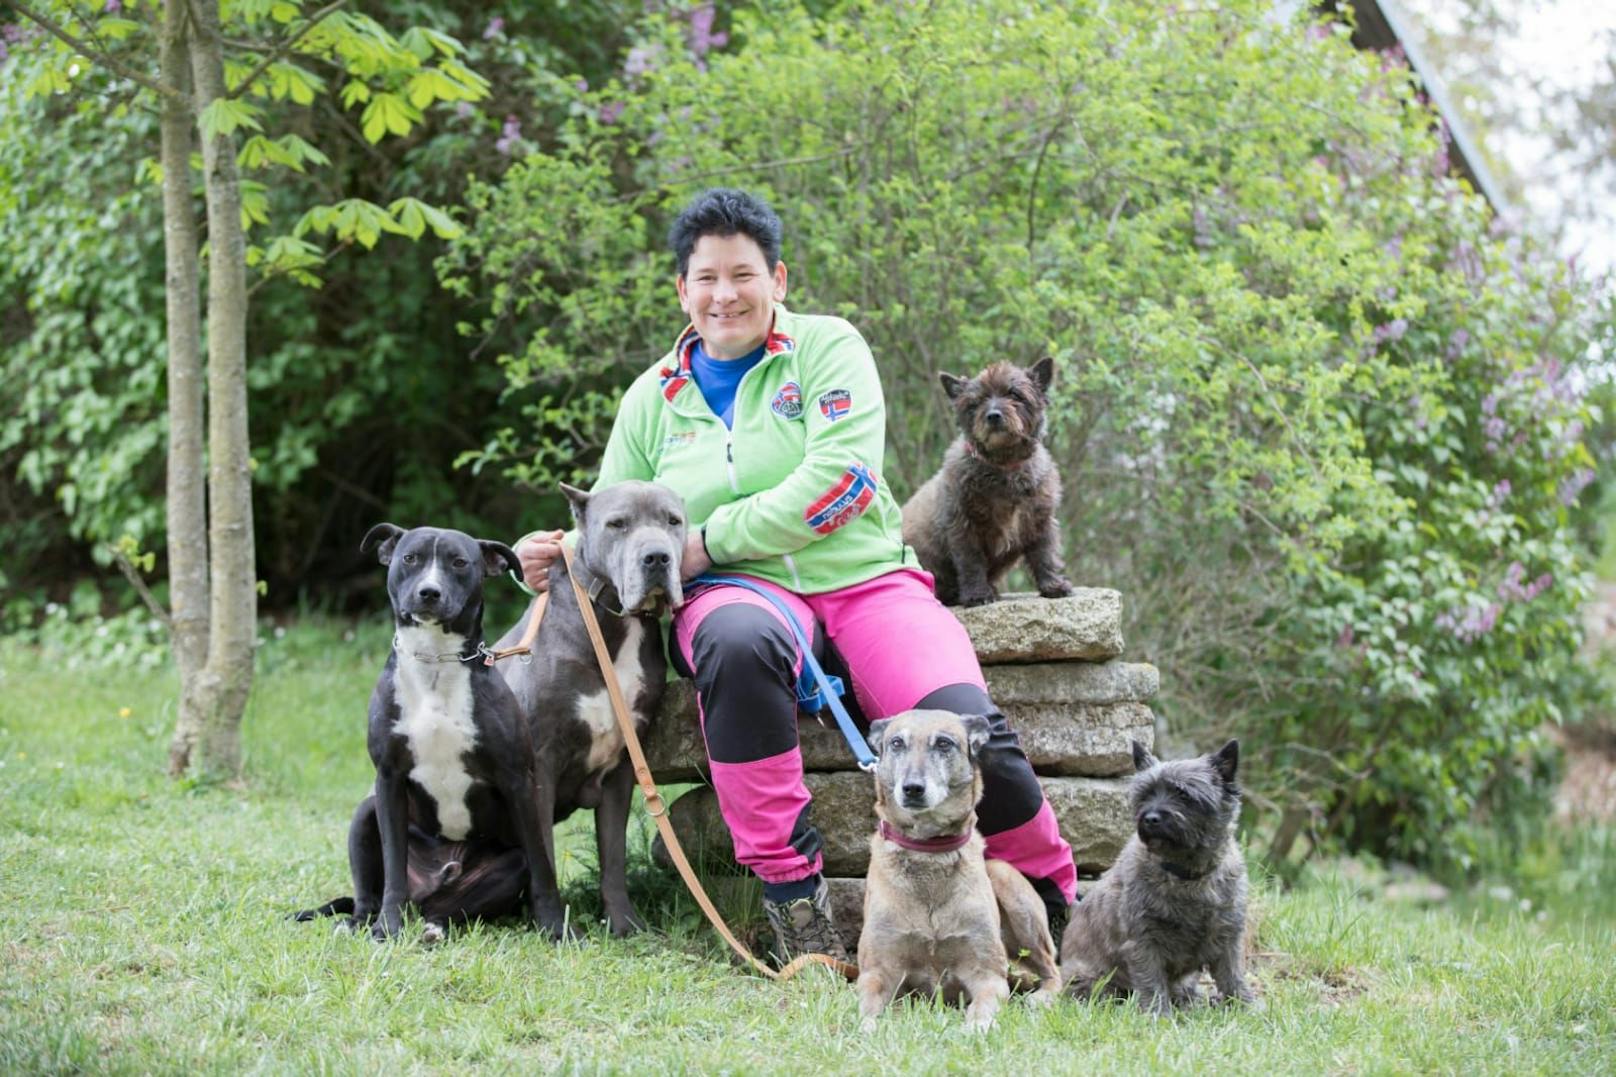 Freistadts Tierheim-Leiterin Karin Binder mit ihren tierischen Bewohnern